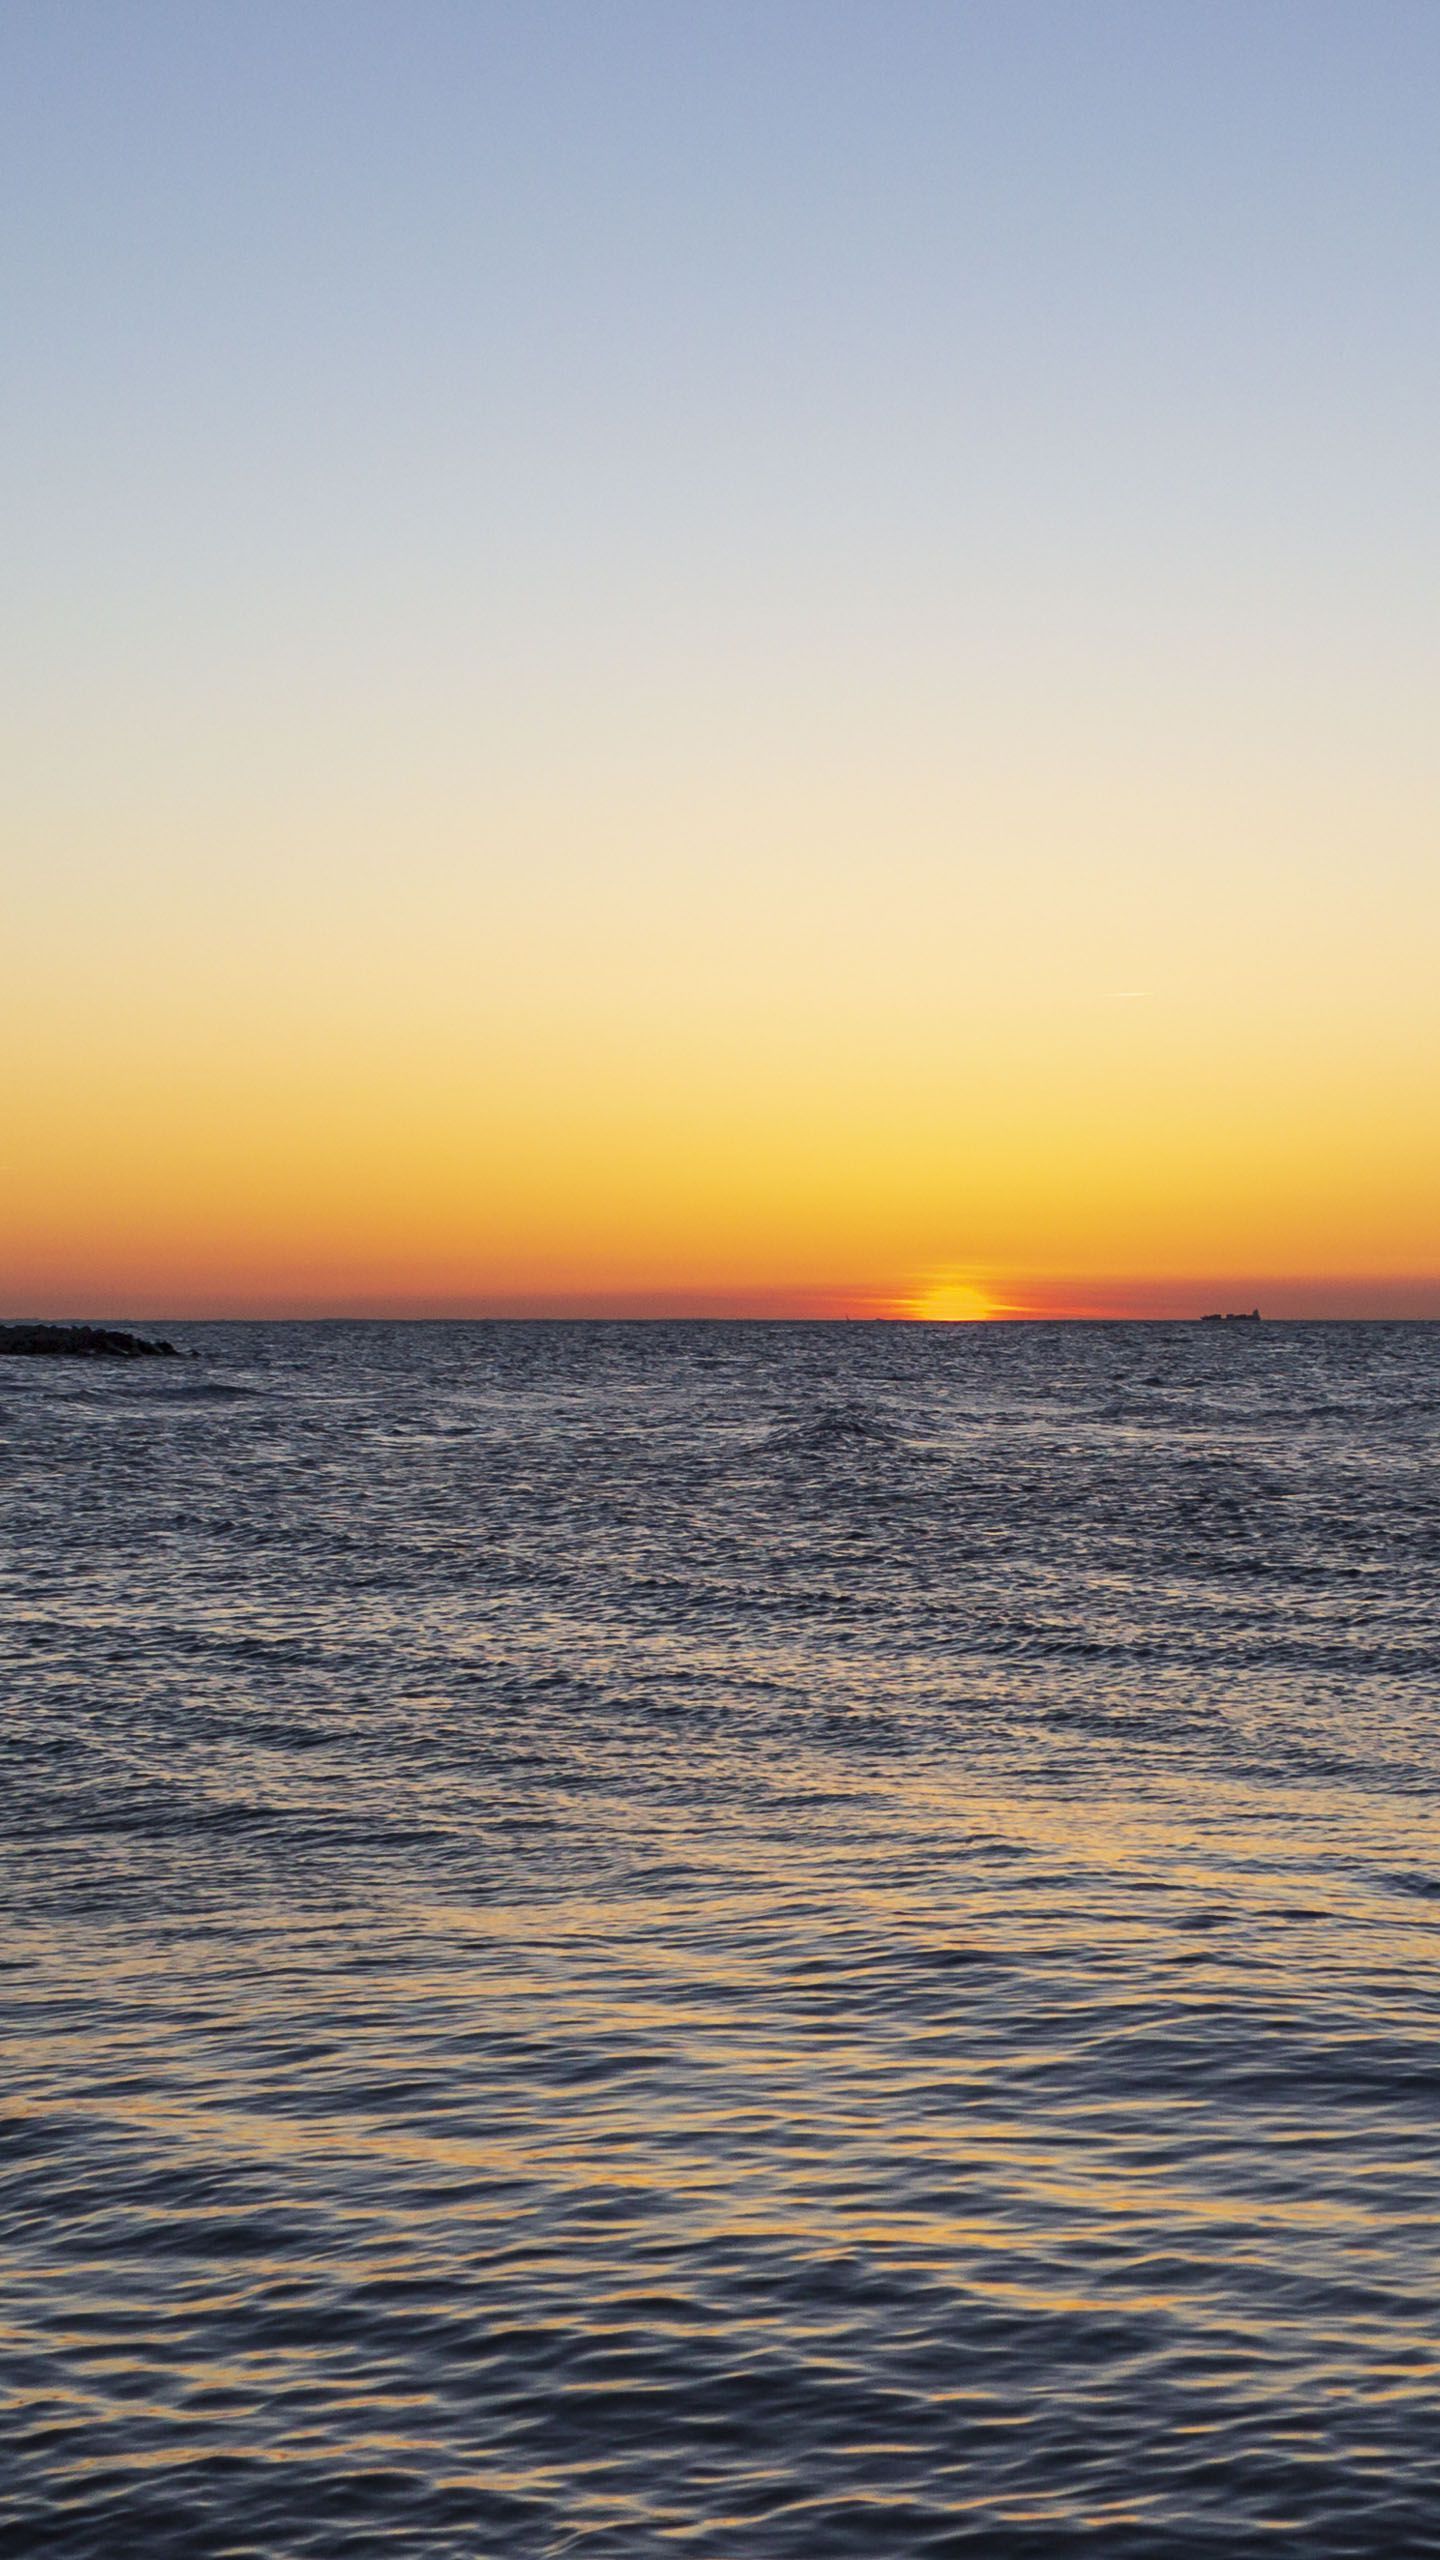  Sonnenuntergang Hintergrundbild 1440x2560. Hintergrundbilder. Ostsee mit Sonnenuntergang